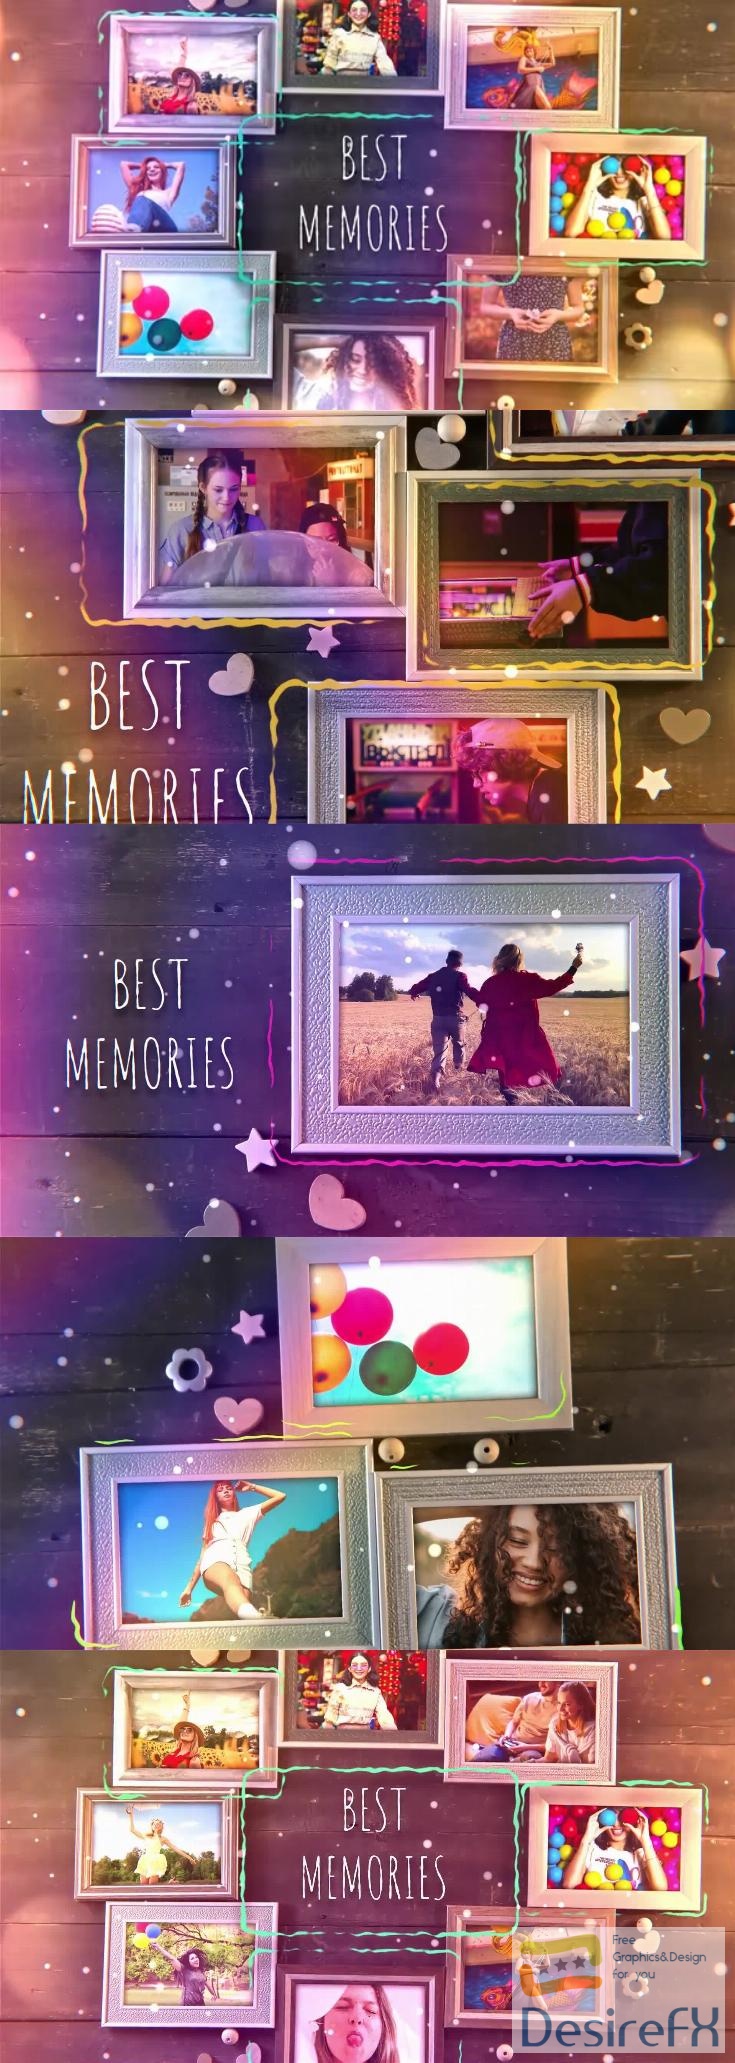 Videohive - Best Memories Photo Gallery - 38468792